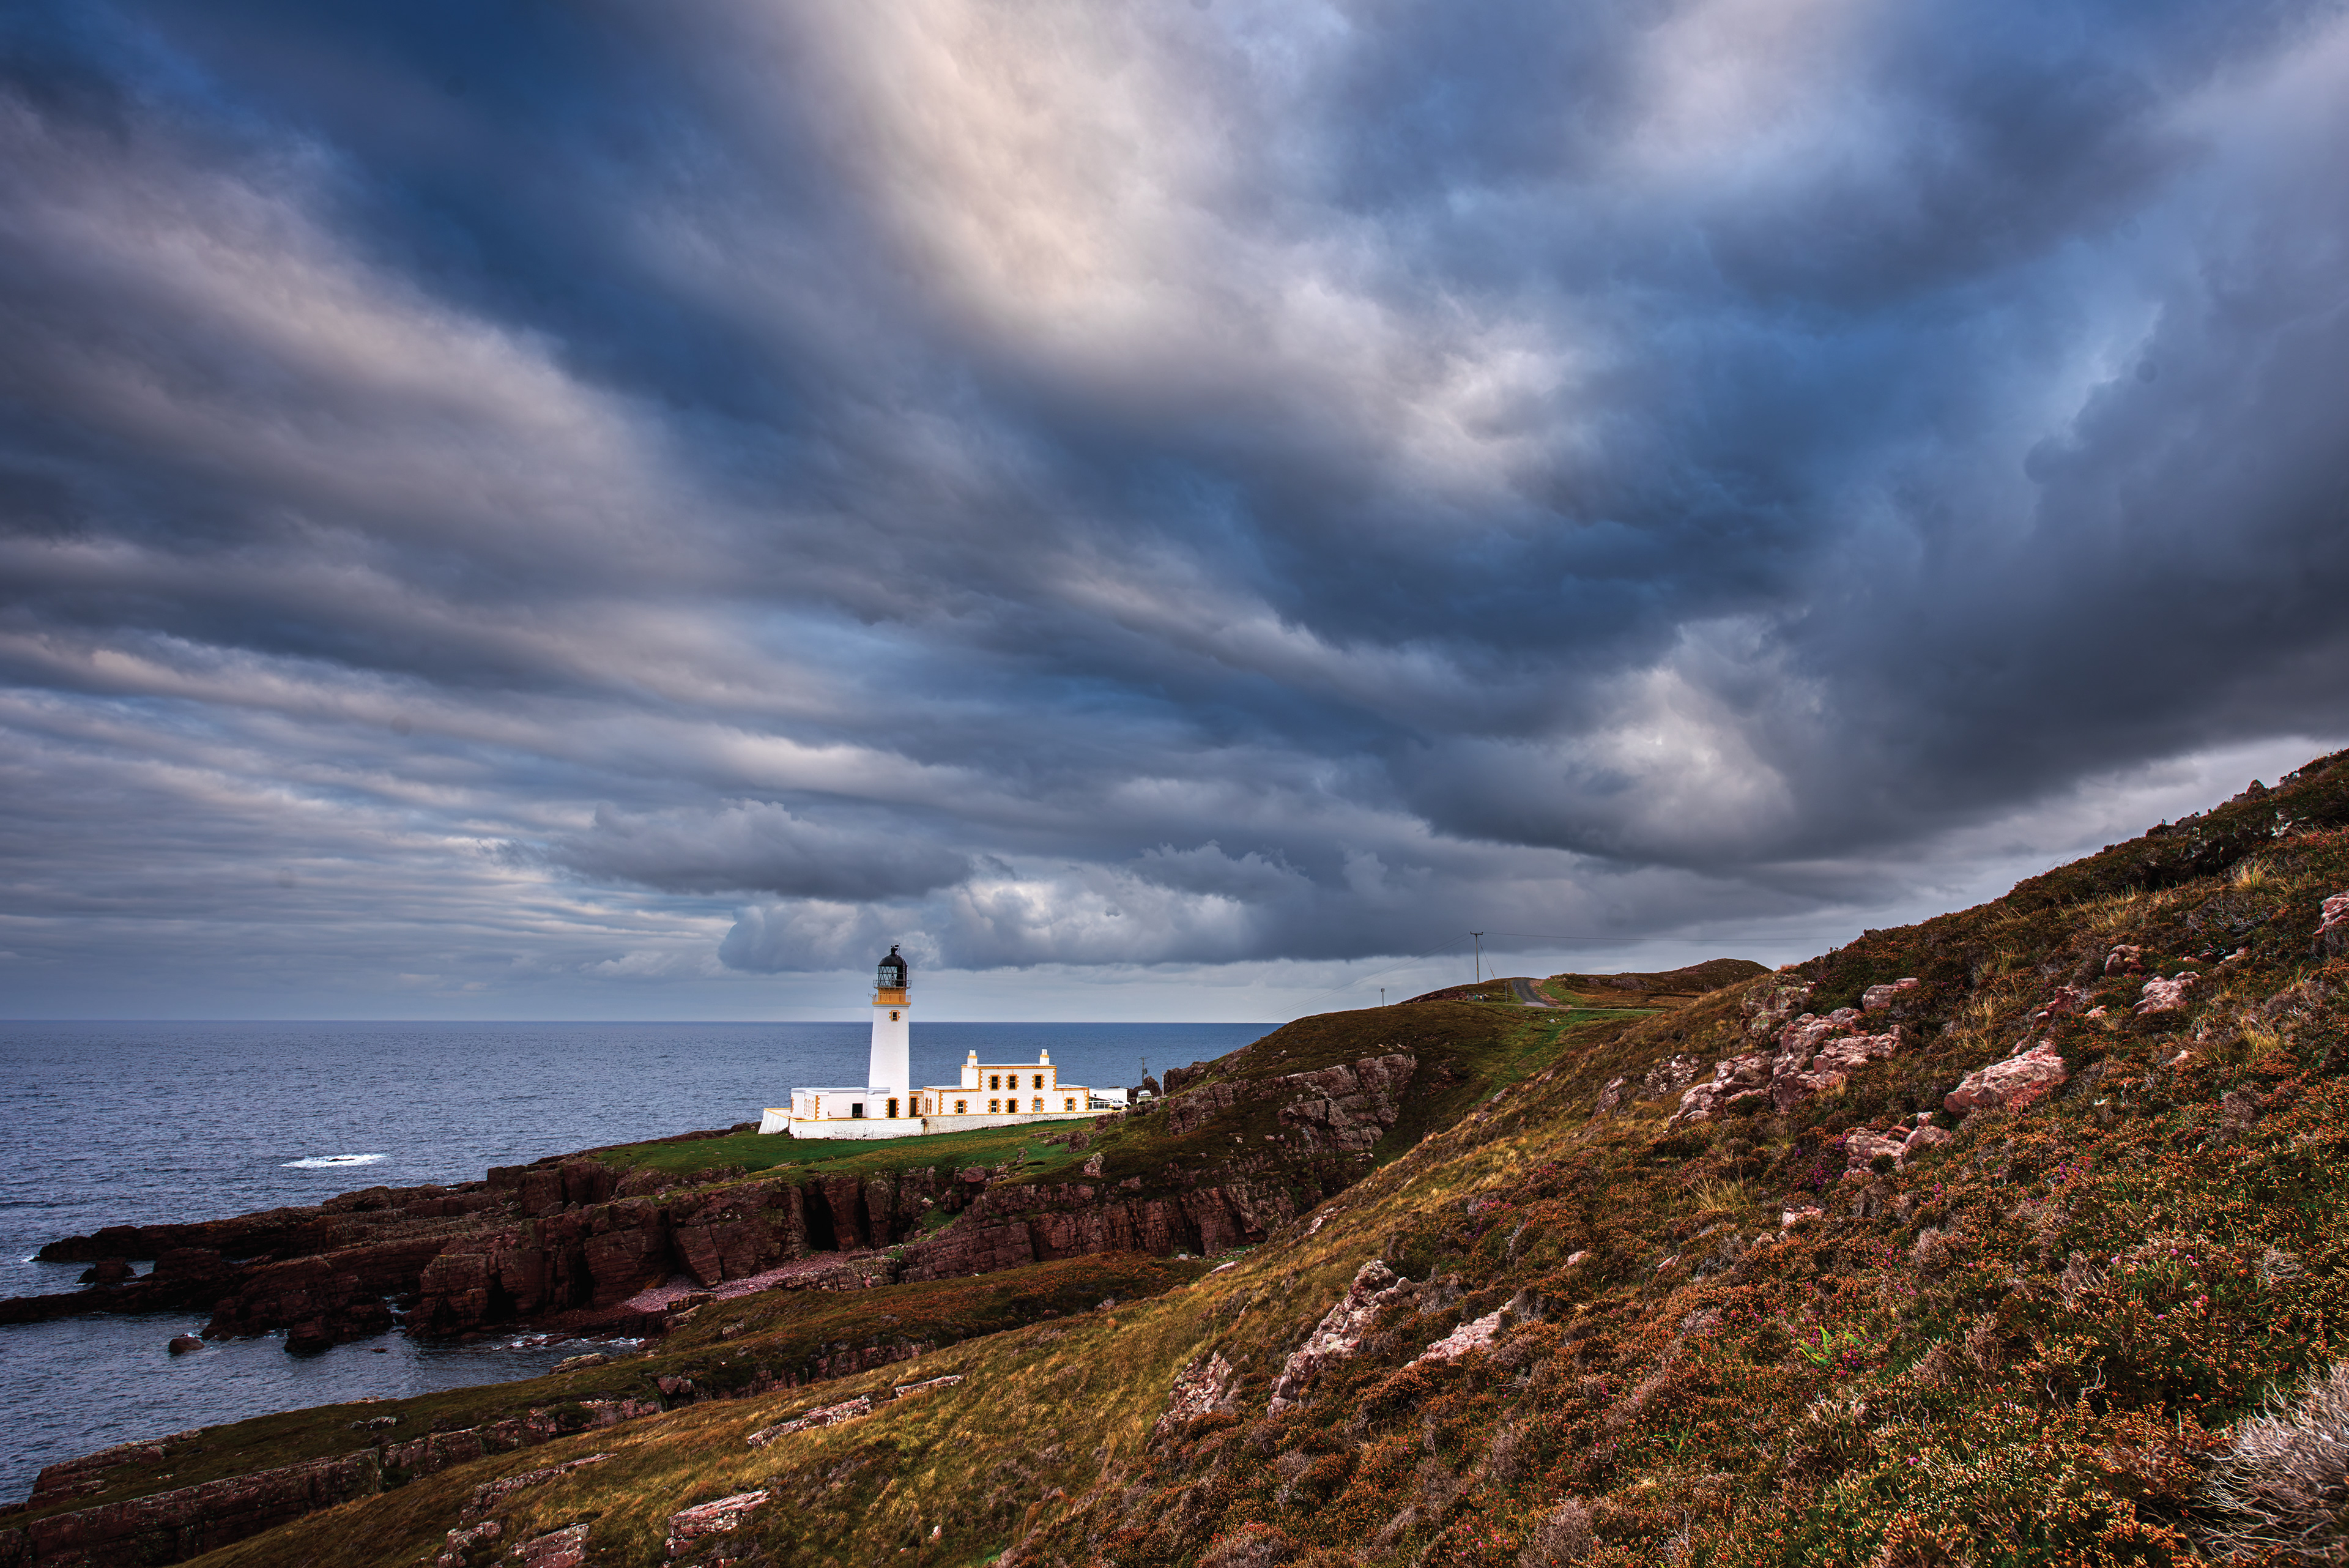 Peter Finch - Rua Reidh Lighthouse, Gairloch, Western Scotland 2022.